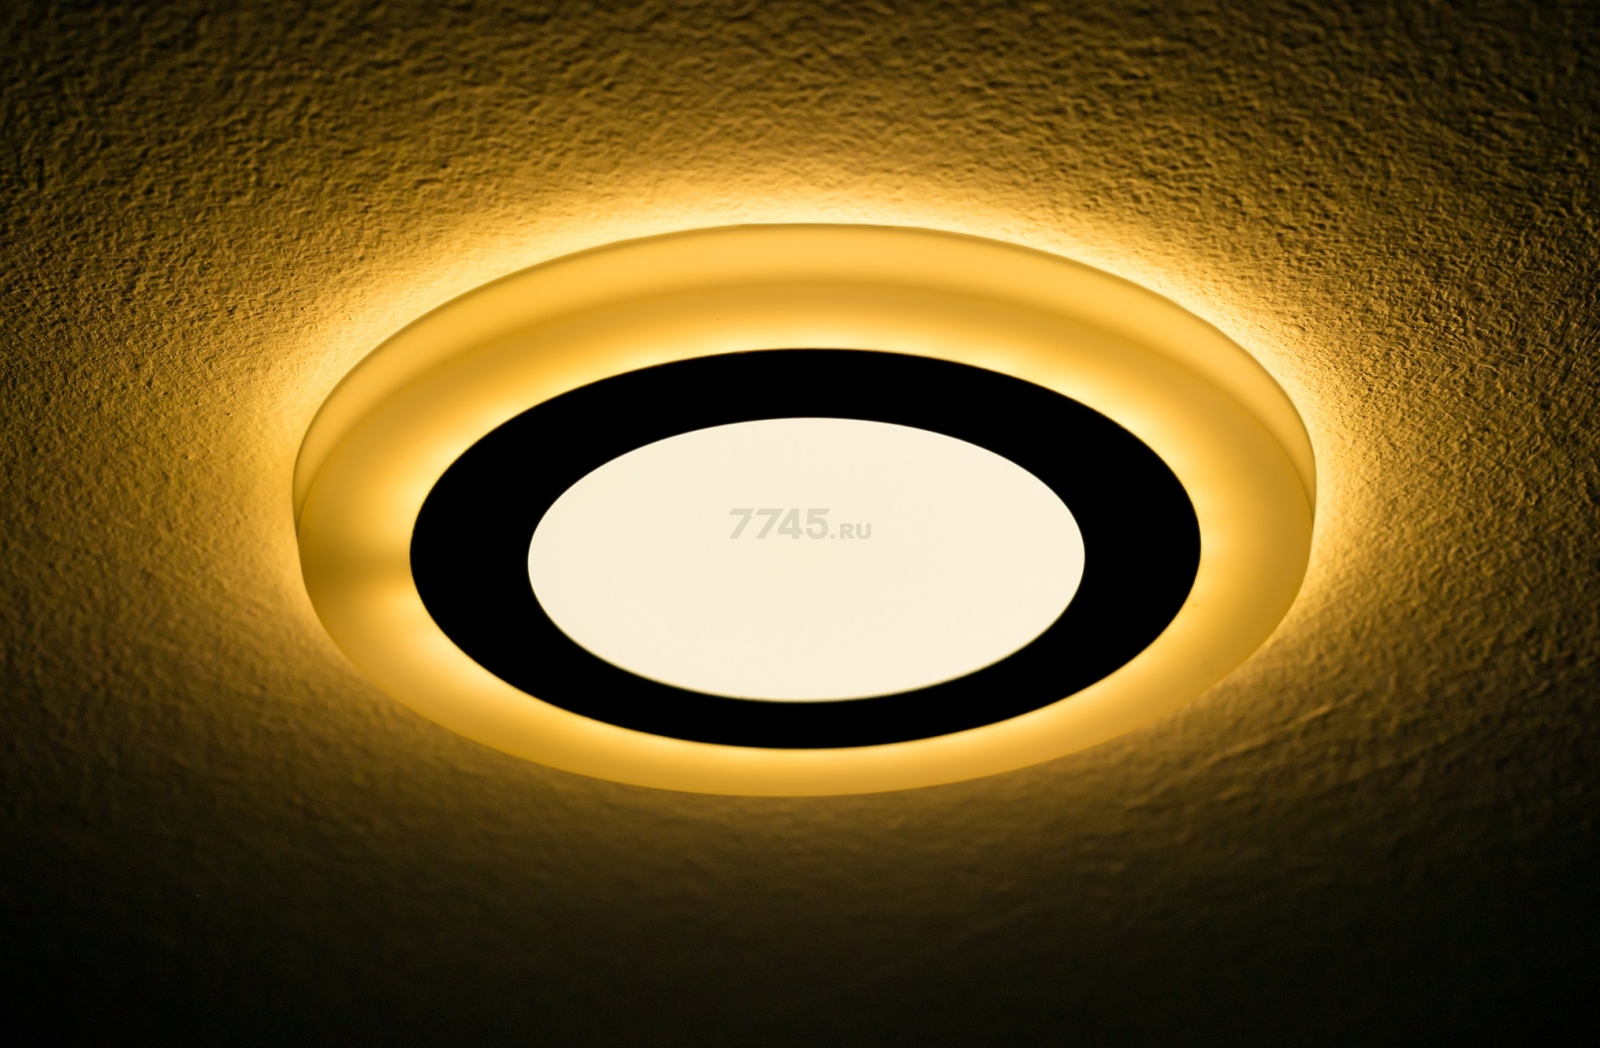 Светильник встраиваемый светодиодный 6+3 Вт 4000K TRUENERGY Color Круг с желтой подсветкой (10222) - Фото 7